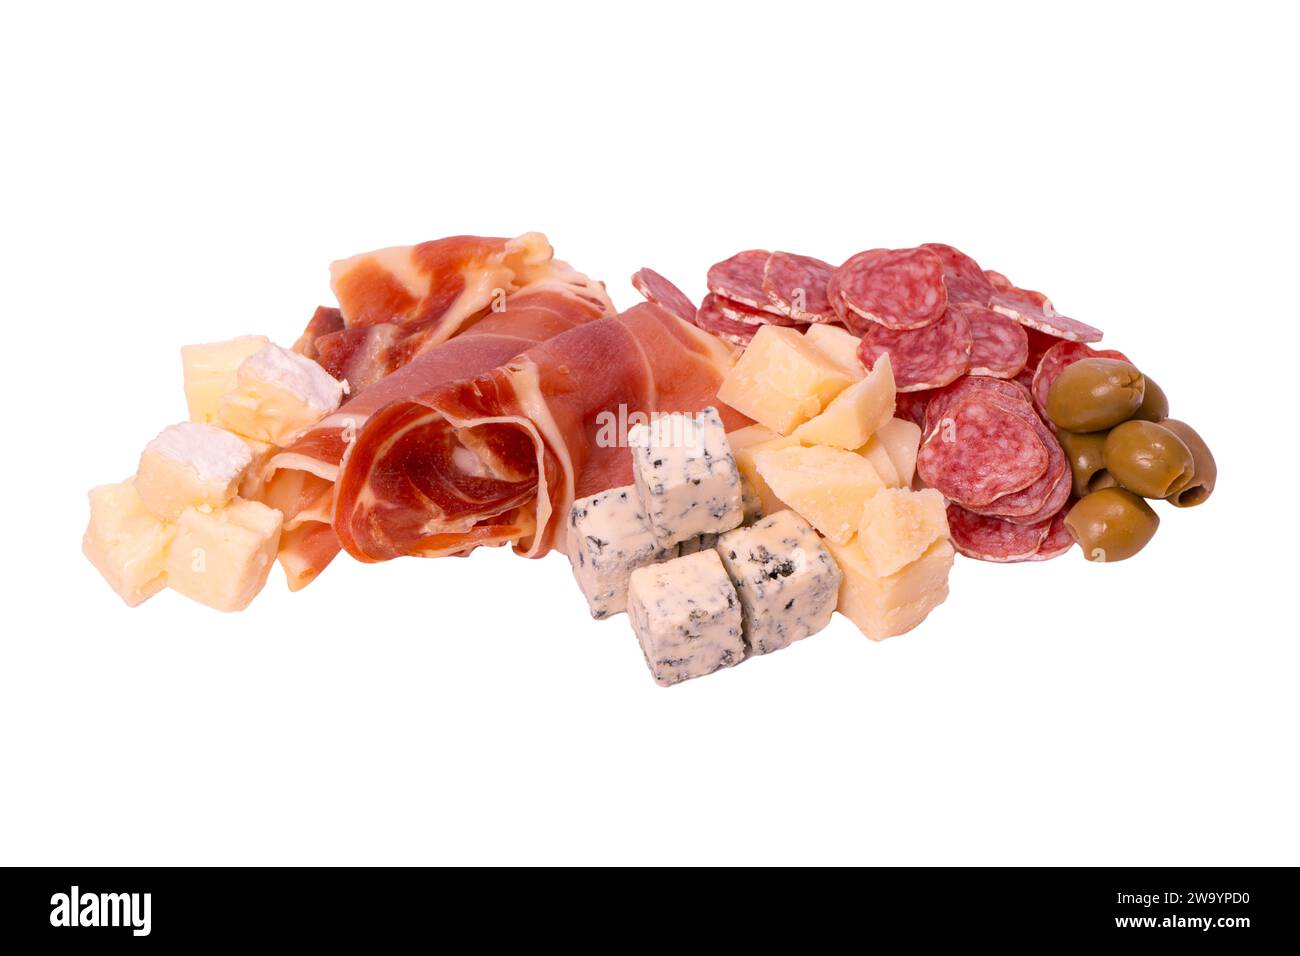 Une assiette avec des collations pour le vin. Fromage, olives, salami, jamon isolé sur un fond blanc. Banque D'Images